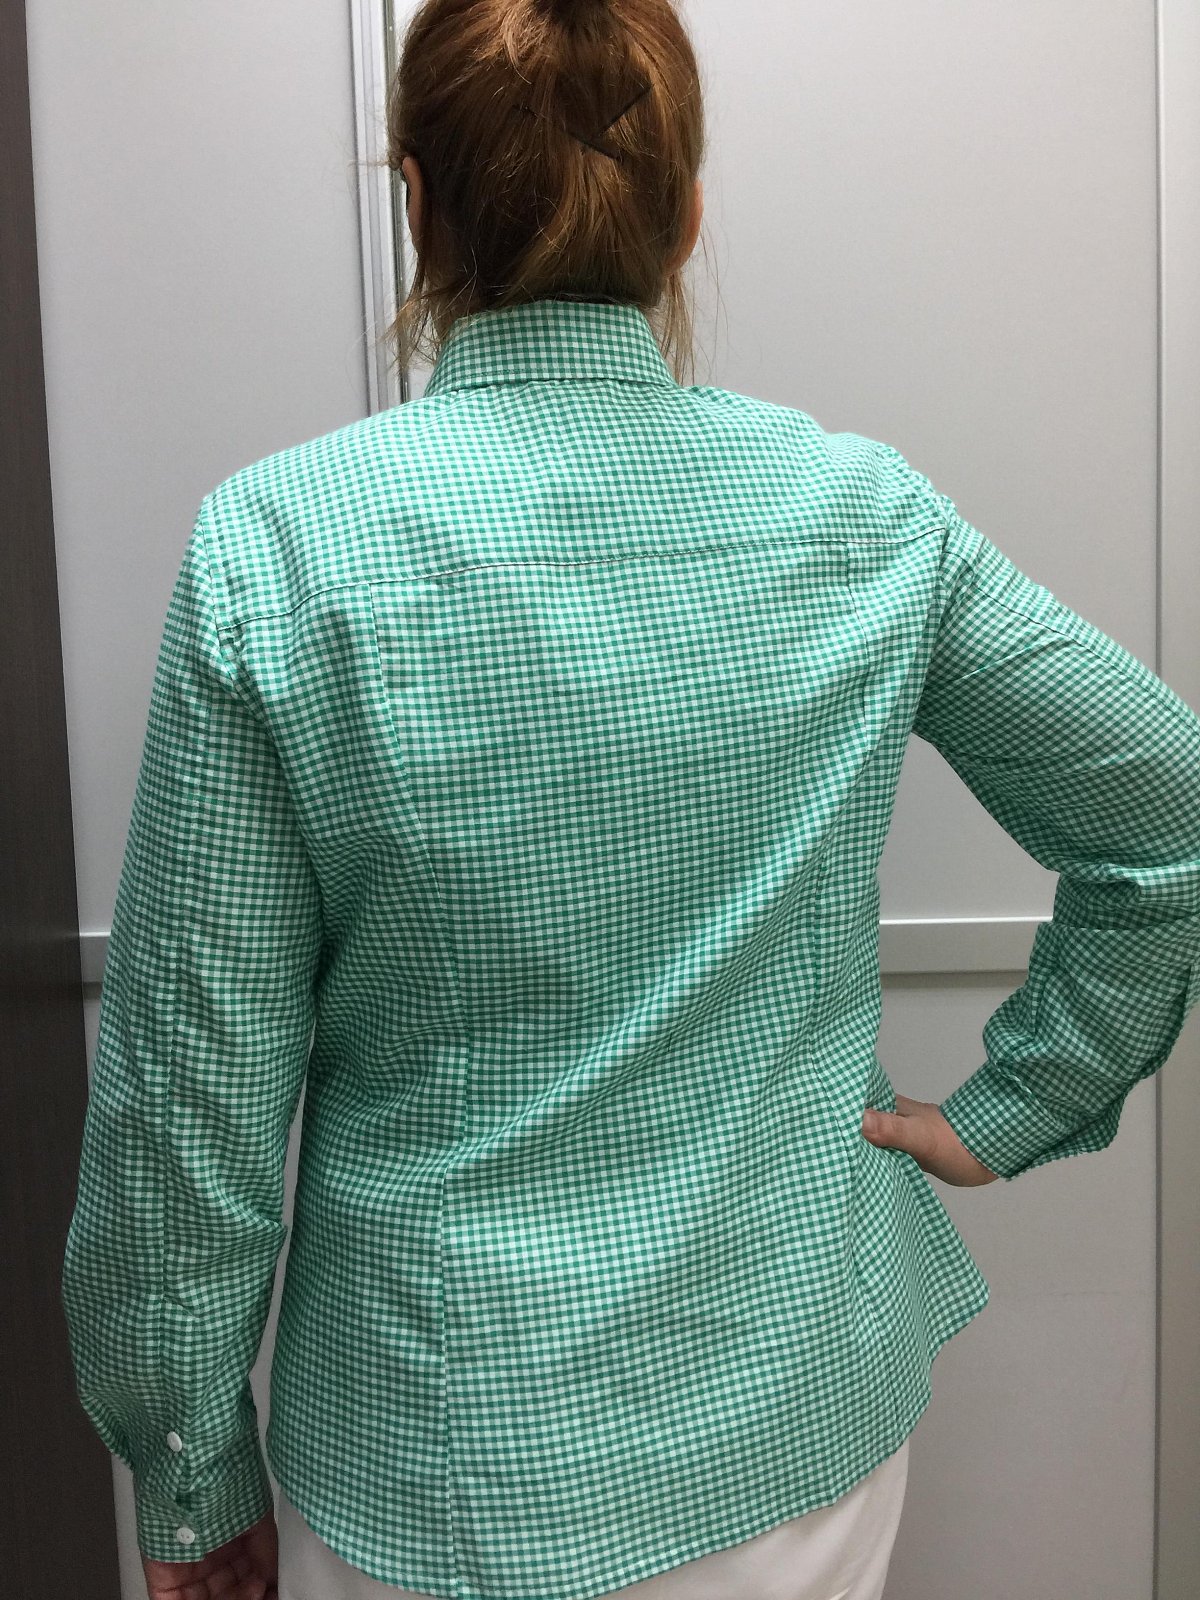 Блузка пошив - пример модели: Блузка-рубашка приталенная с длинным рукавом